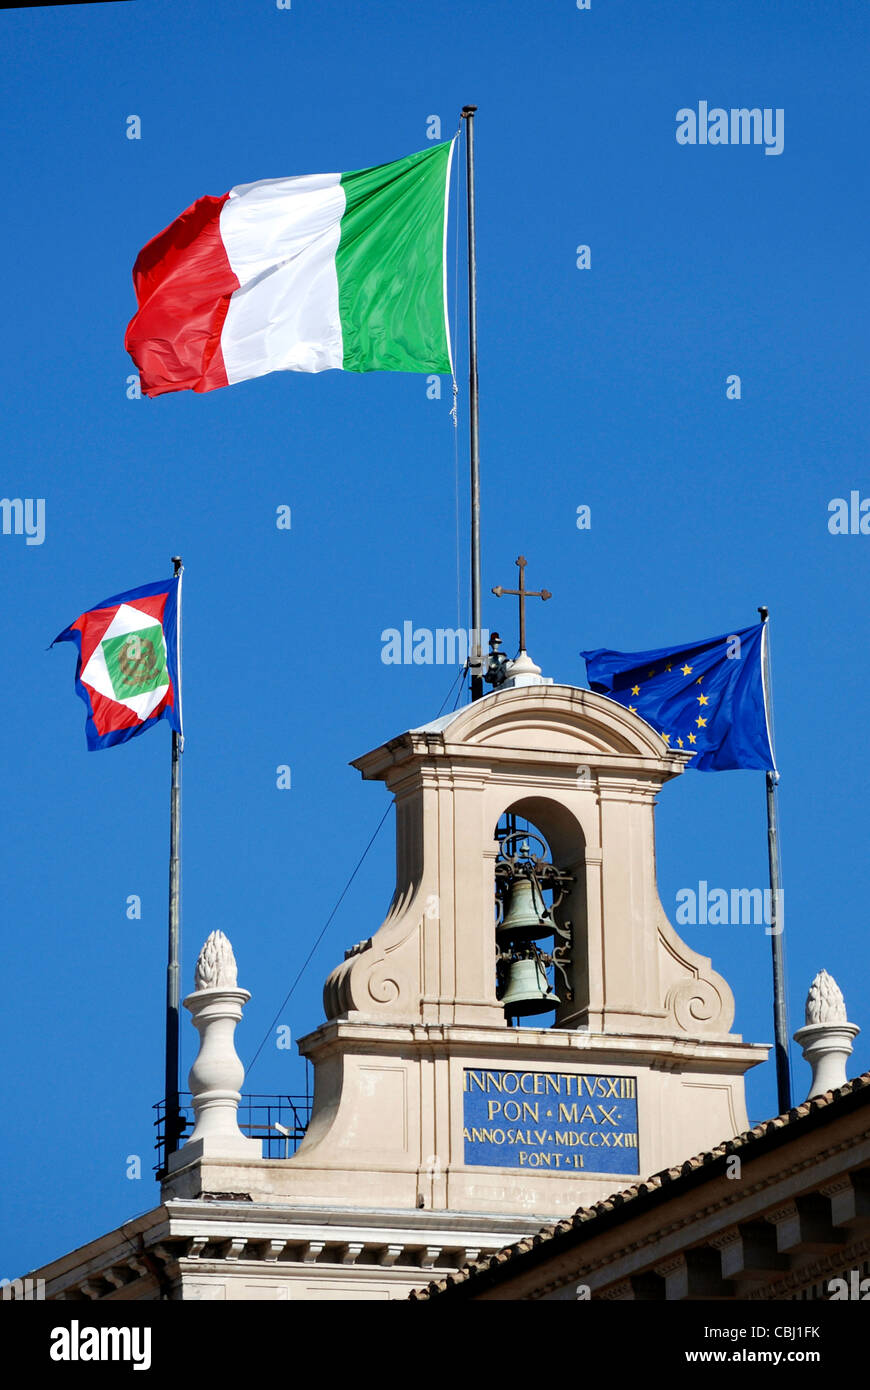 Fahnen im Palazzo Quirinale in Rom - Residenz des italienischen Staatspräsidenten. Stockfoto